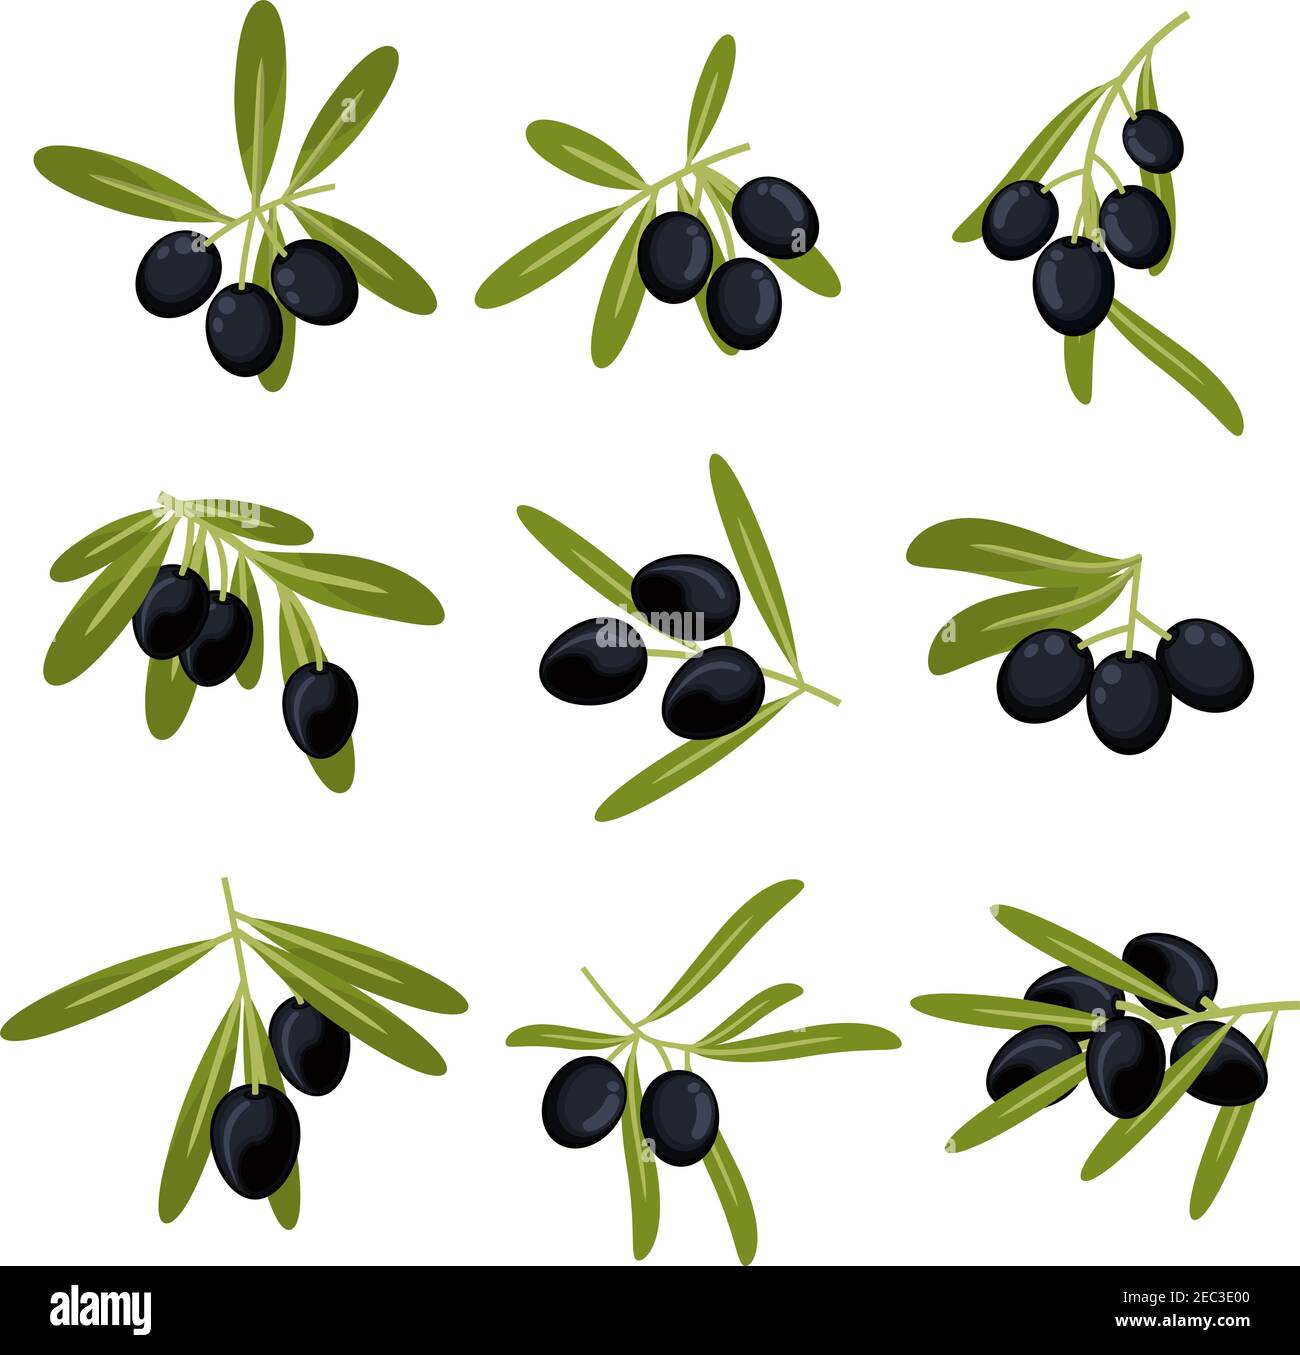 Icone di frutti di oliva coltivati organicamente per il confezionamento dell'olio d'oliva o. design simbolo di pace con rami freschi e verdi con foglie mature olive nere grandi Illustrazione Vettoriale